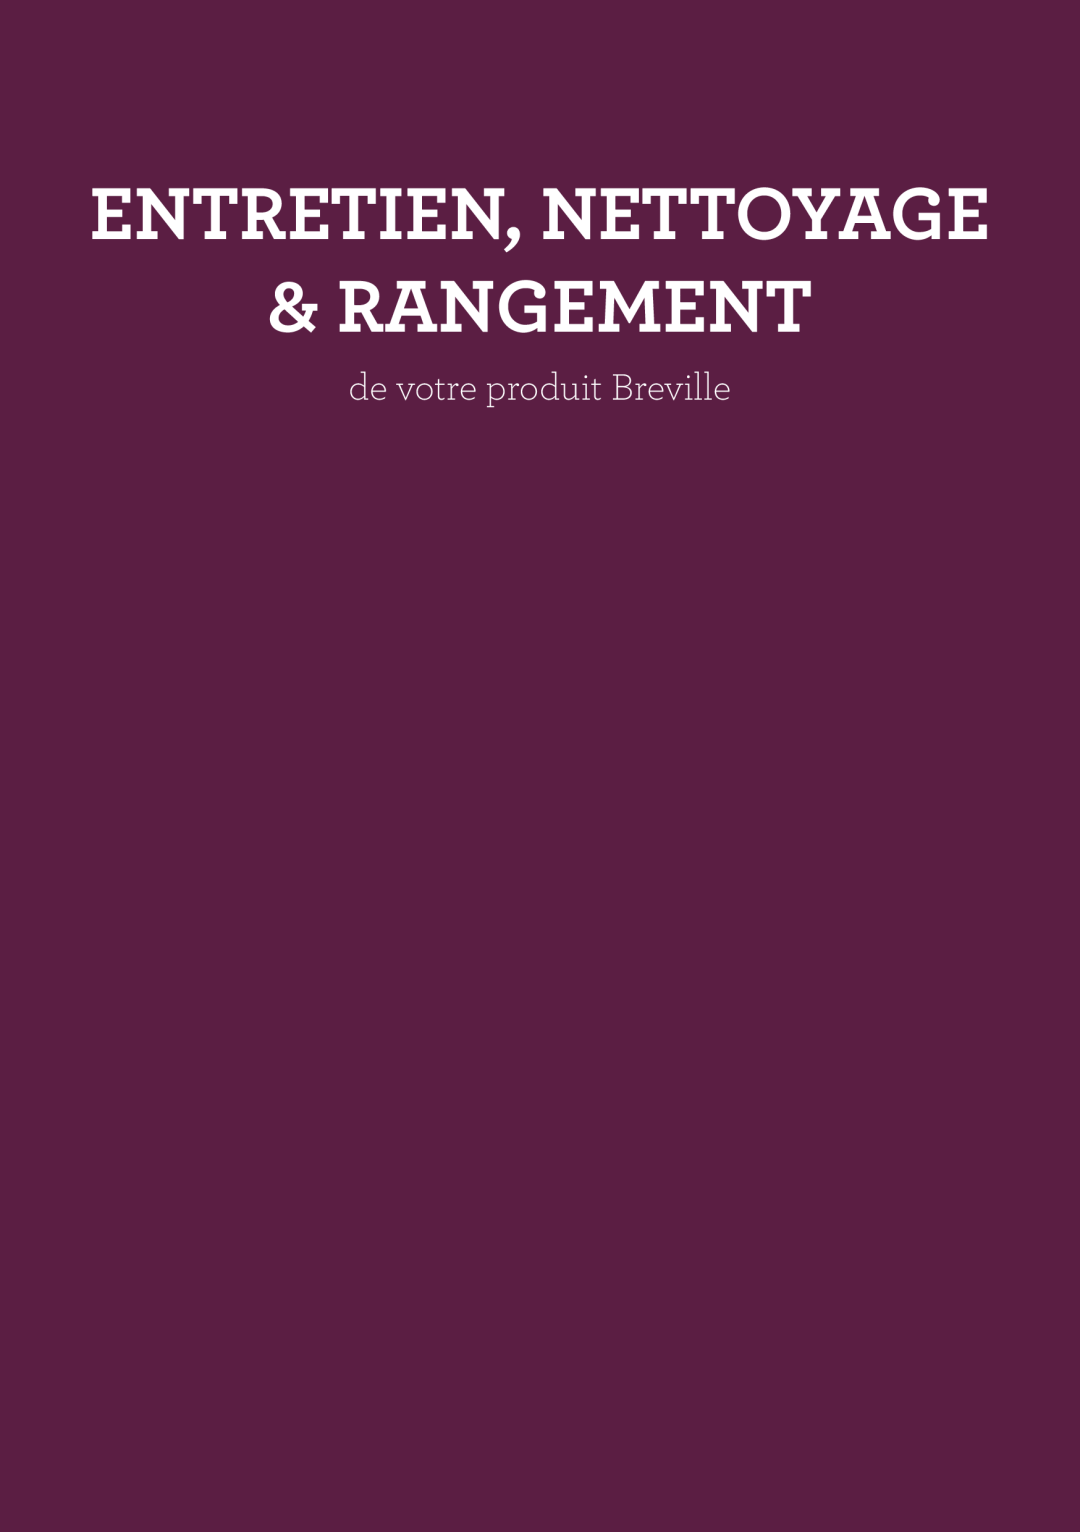 Breville BSB530XL manual Rangement, Entretien, Nettoyage, de votre produit Breville, Typeset 